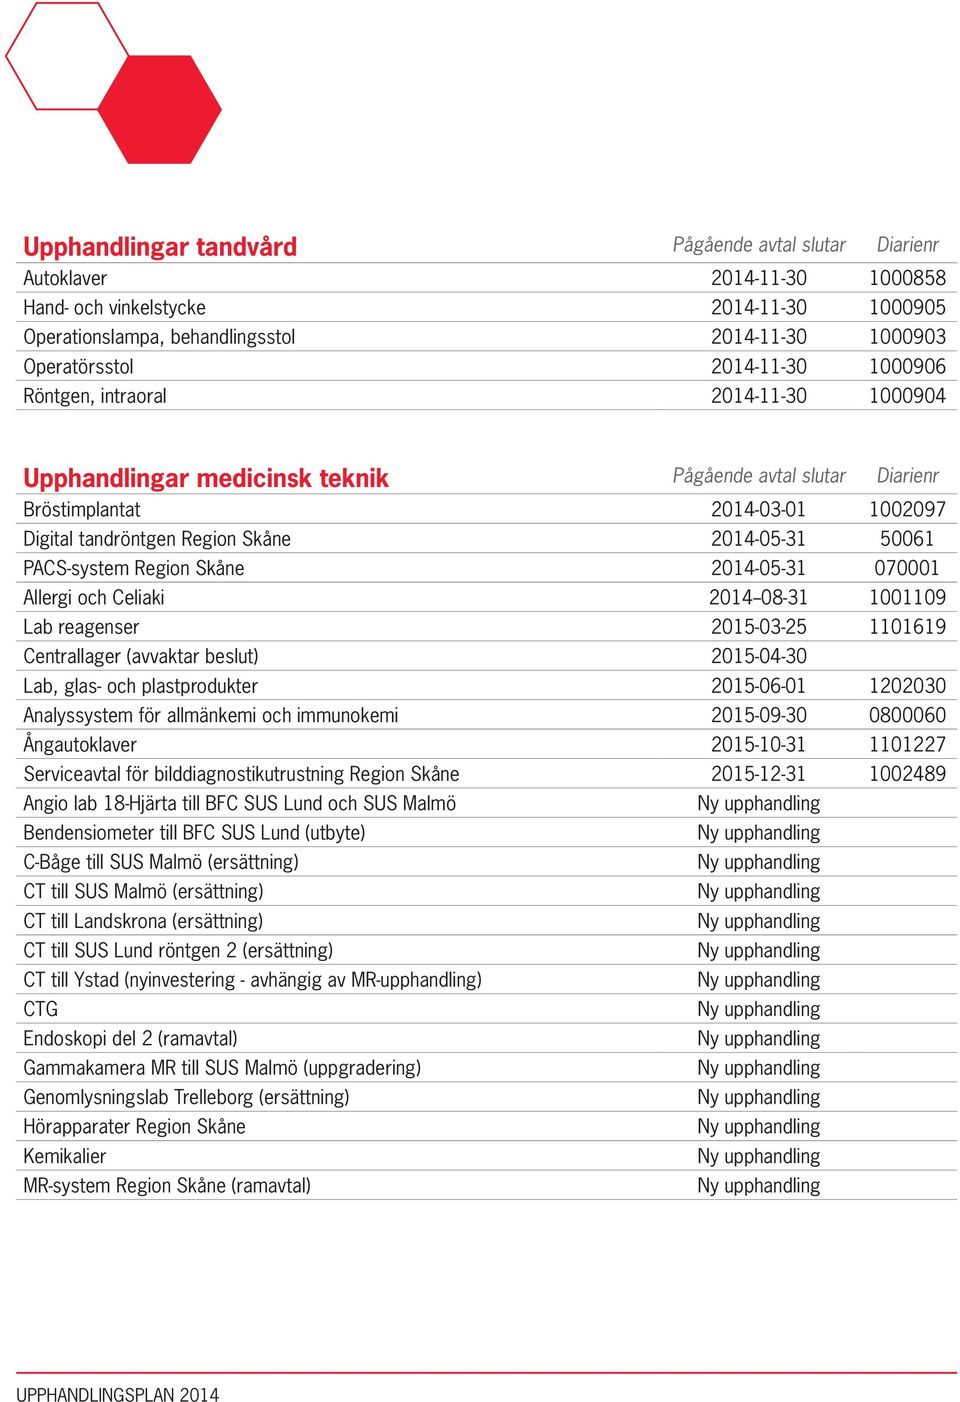 50061 PACS-system Region Skåne 2014-05-31 070001 Allergi och Celiaki 2014--08-31 1001109 Lab reagenser 2015-03-25 1101619 Centrallager (avvaktar beslut) 2015-04-30 Lab, glas- och plastprodukter